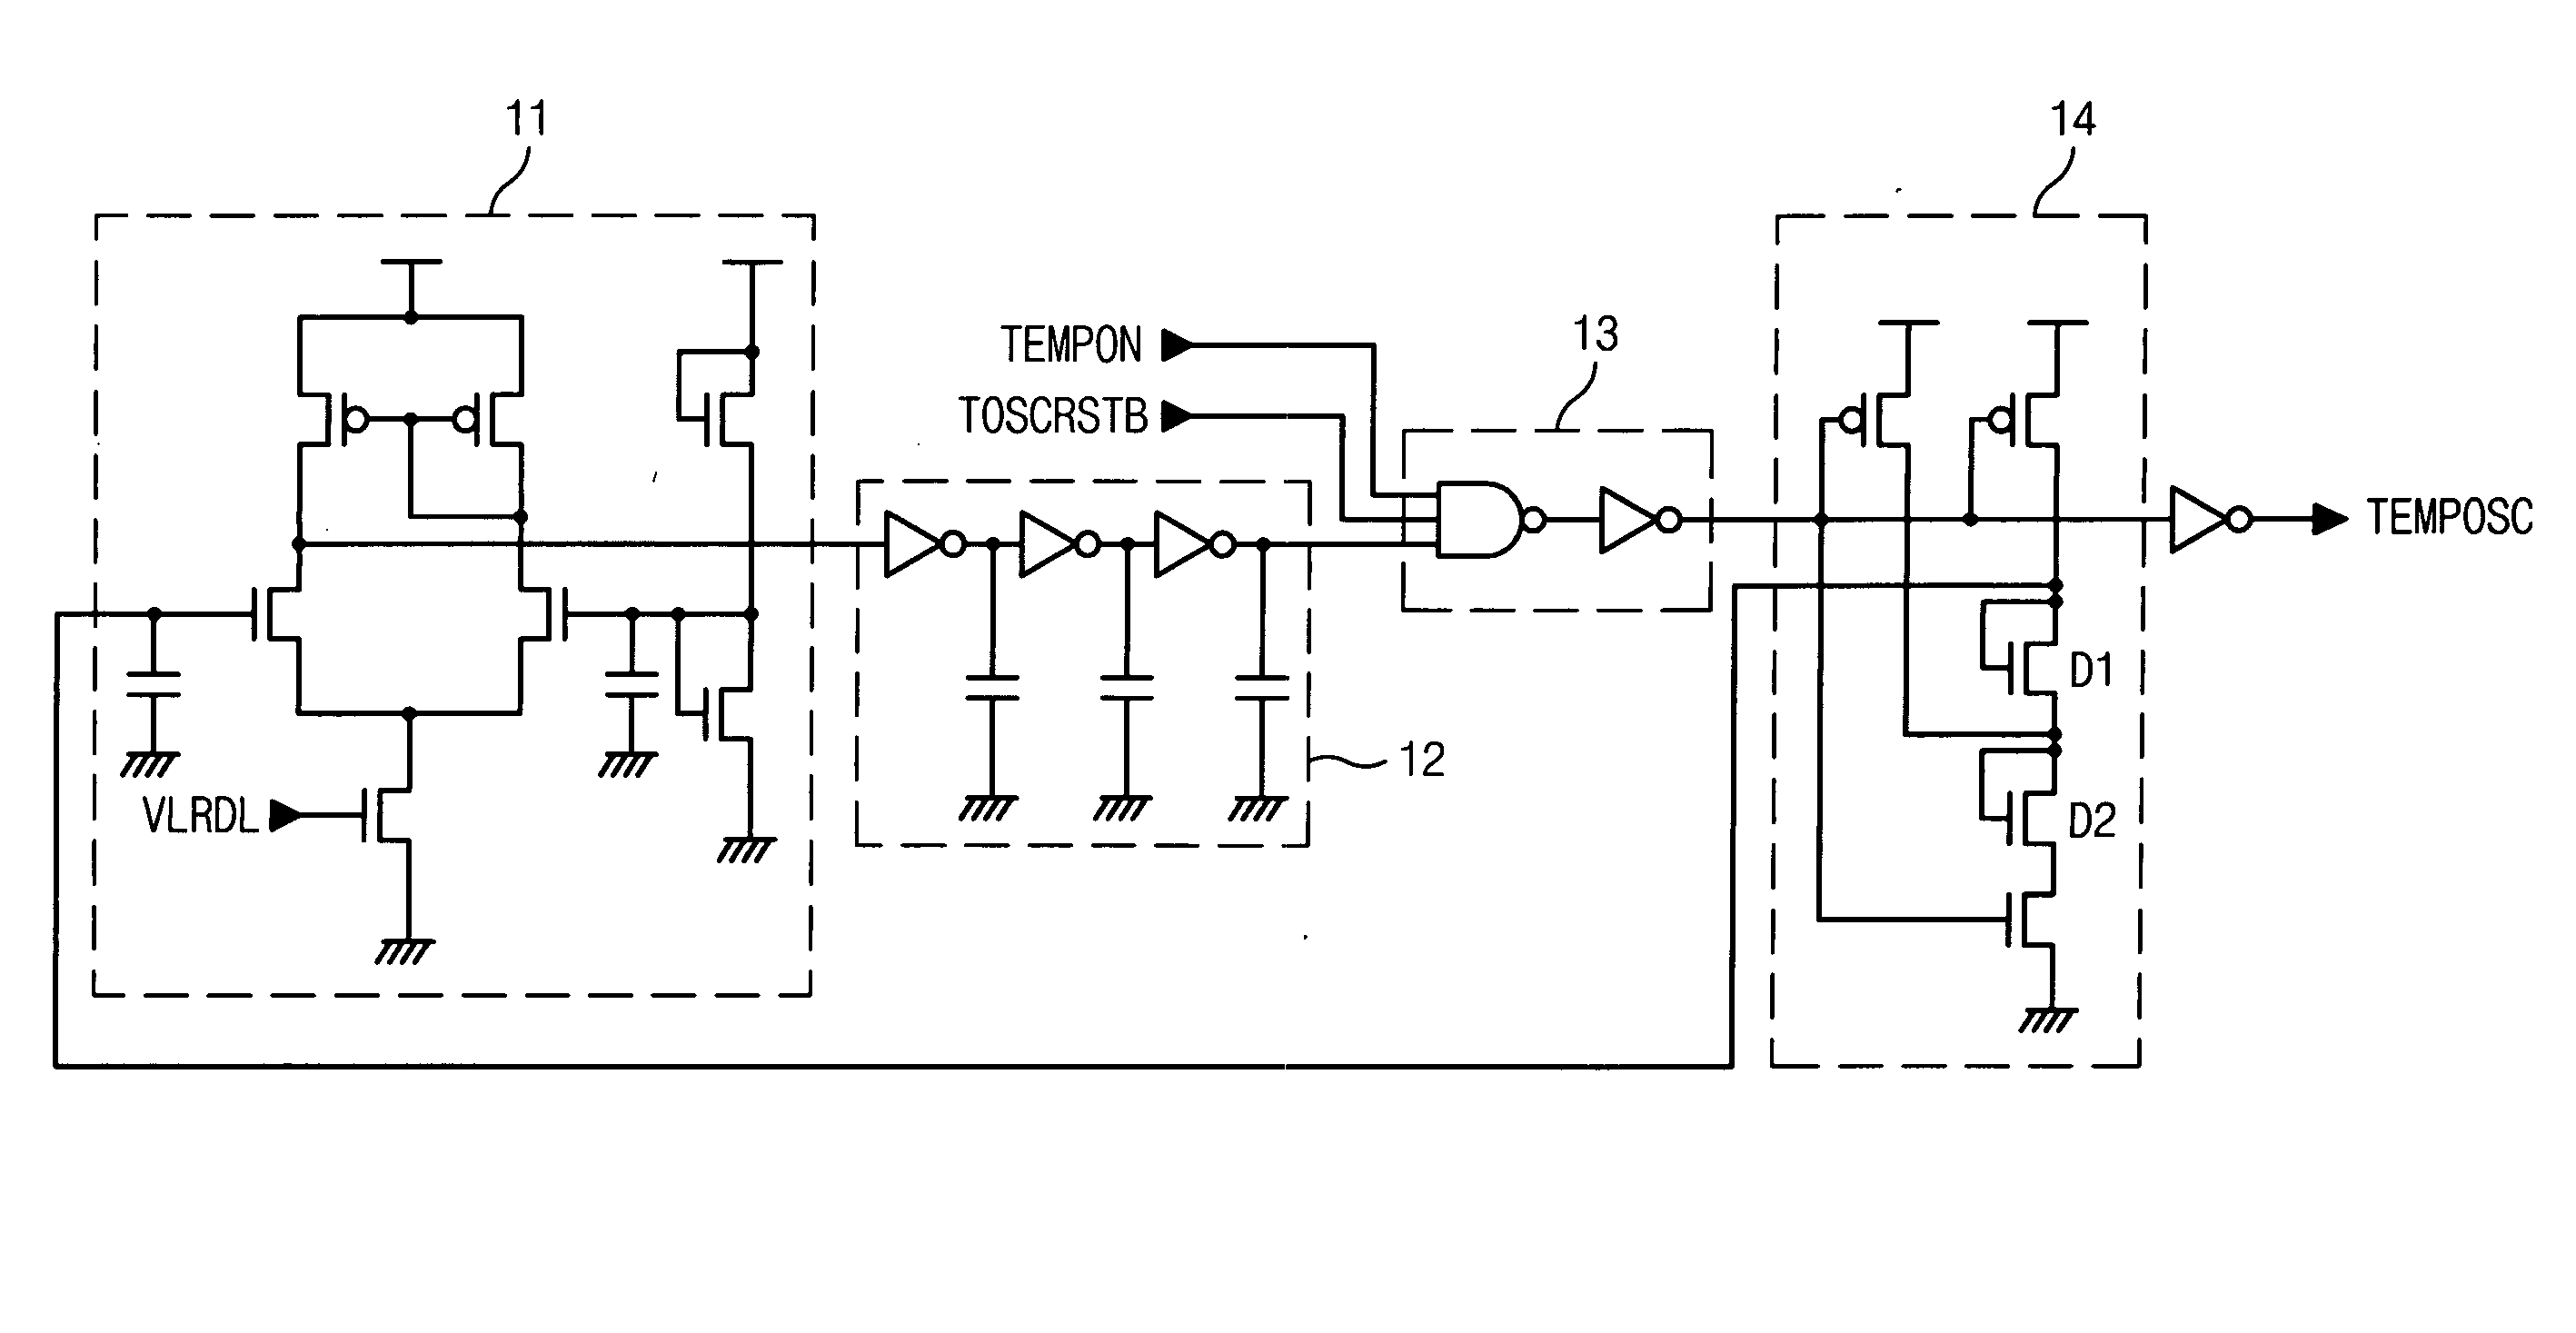 Temperature sensing oscillator circuit